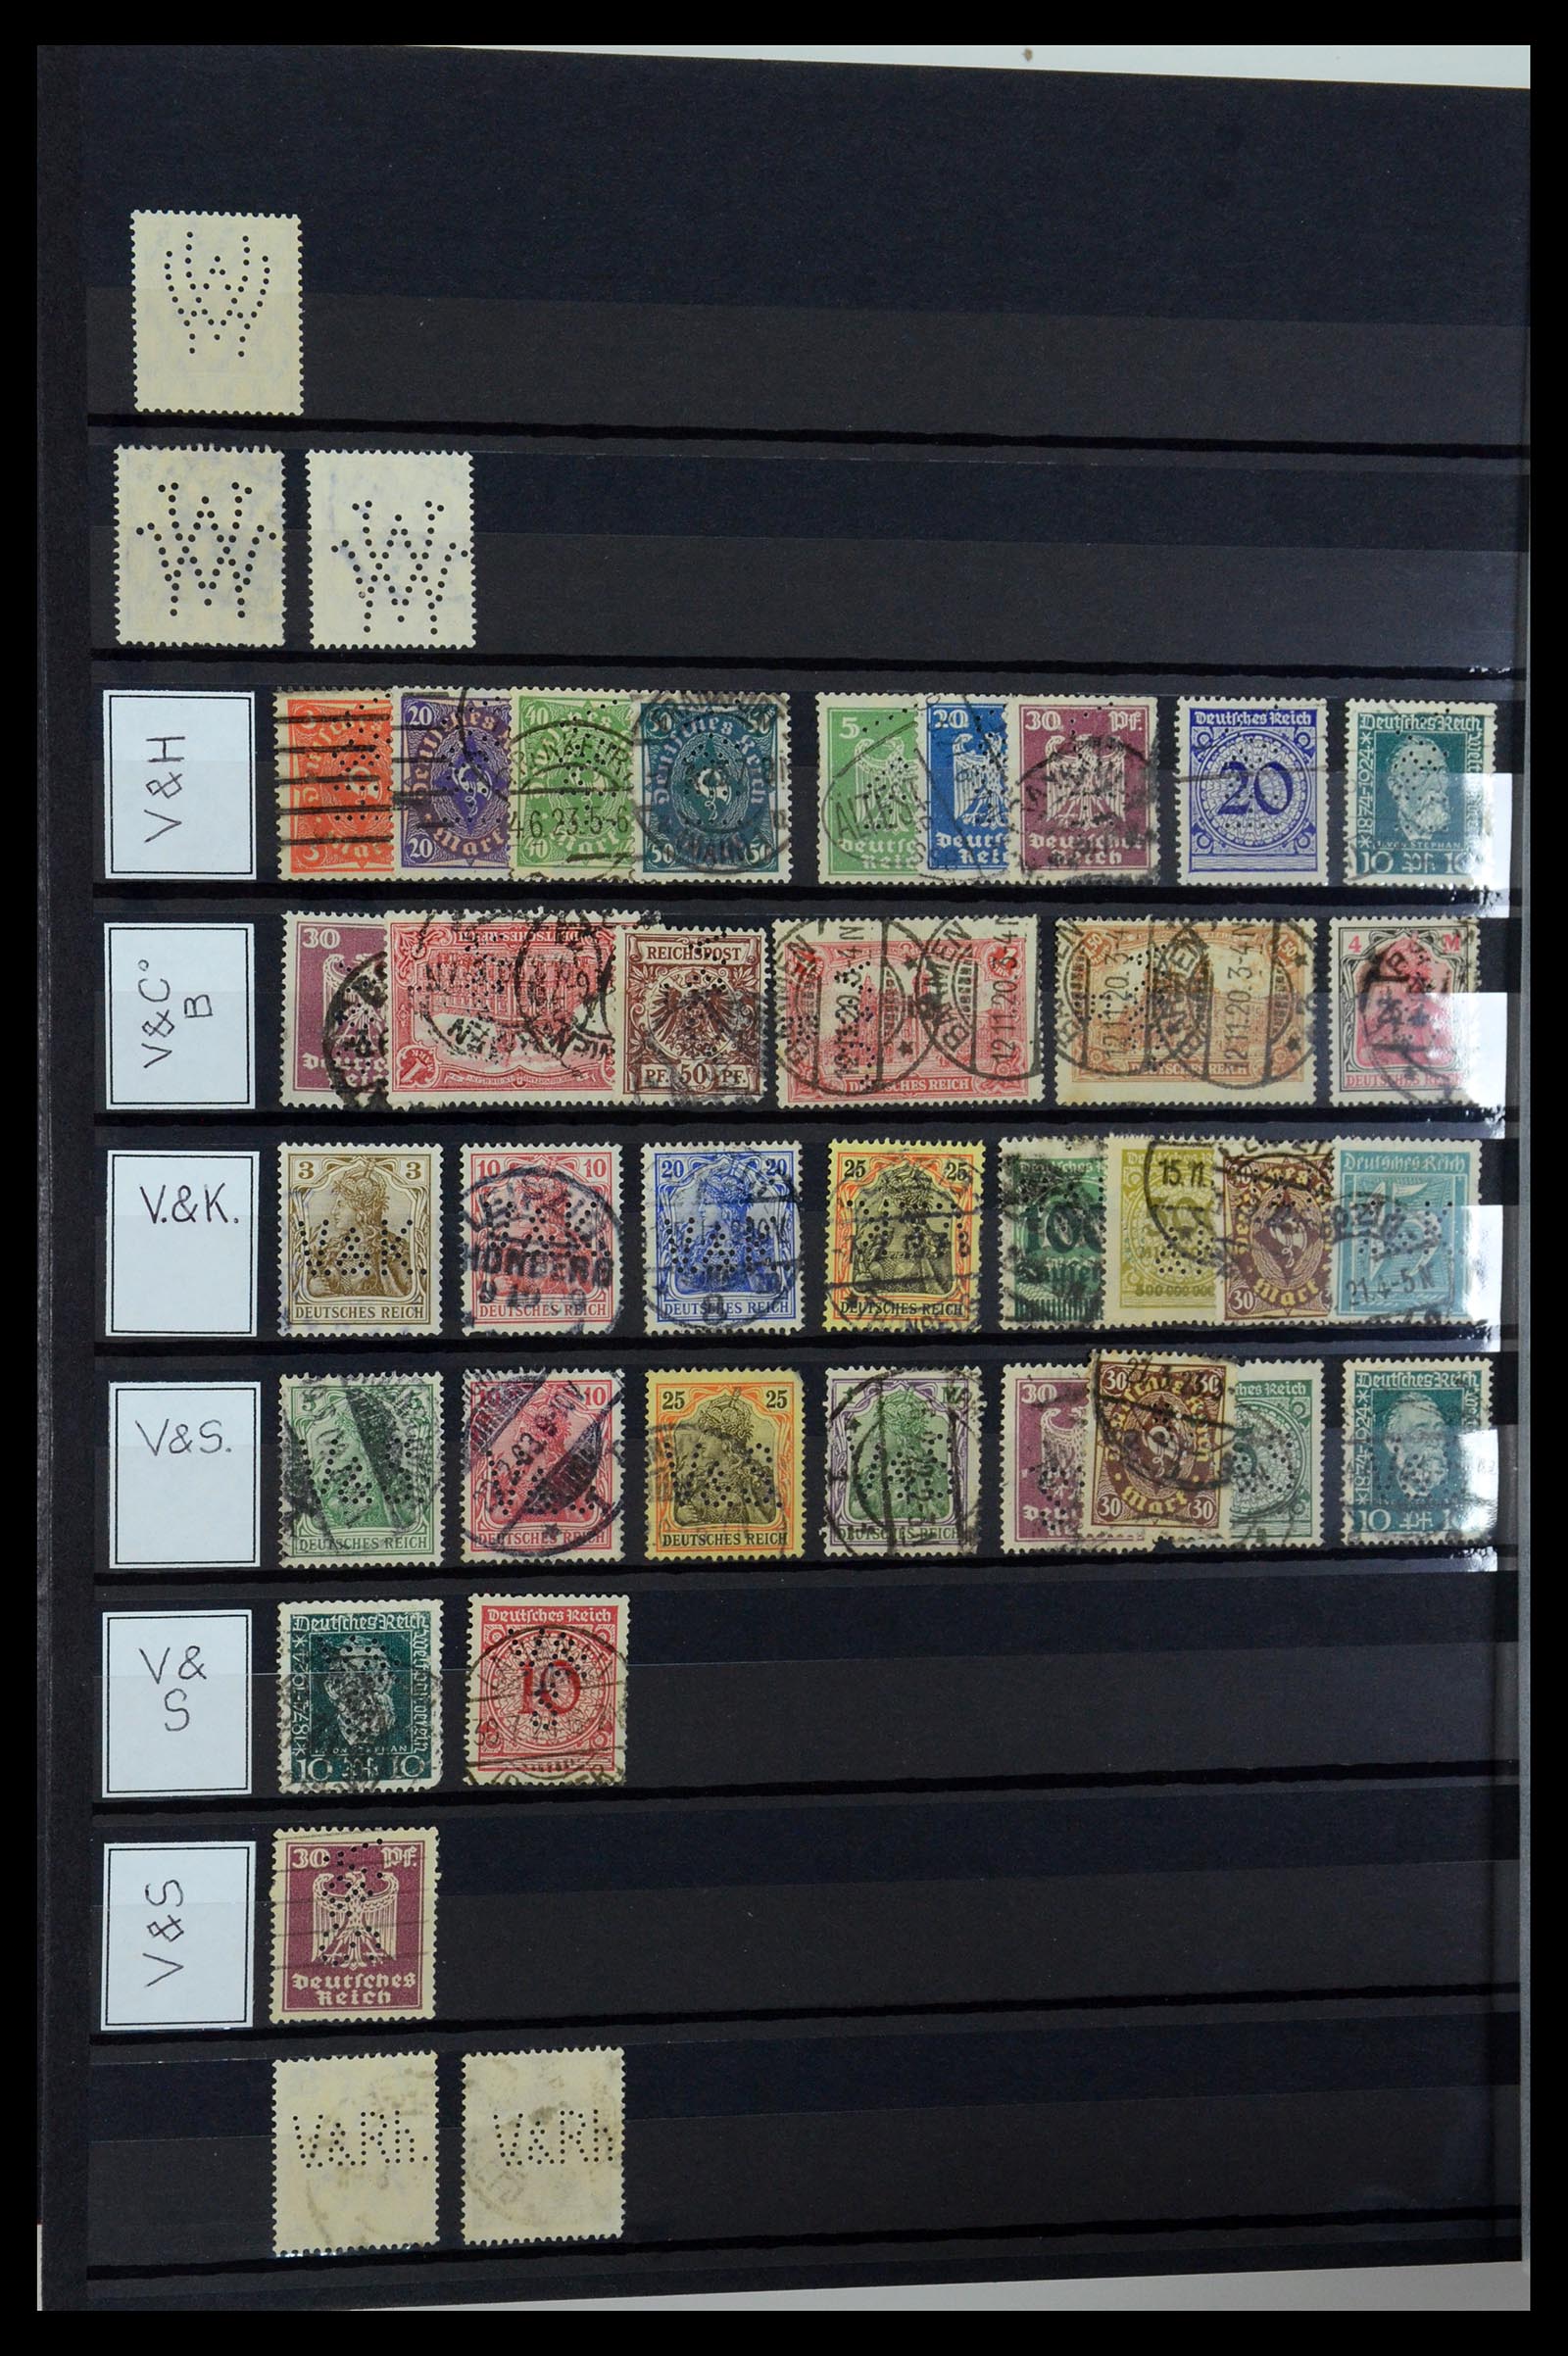 36405 334 - Stamp collection 36405 German Reich perfins 1880-1945.